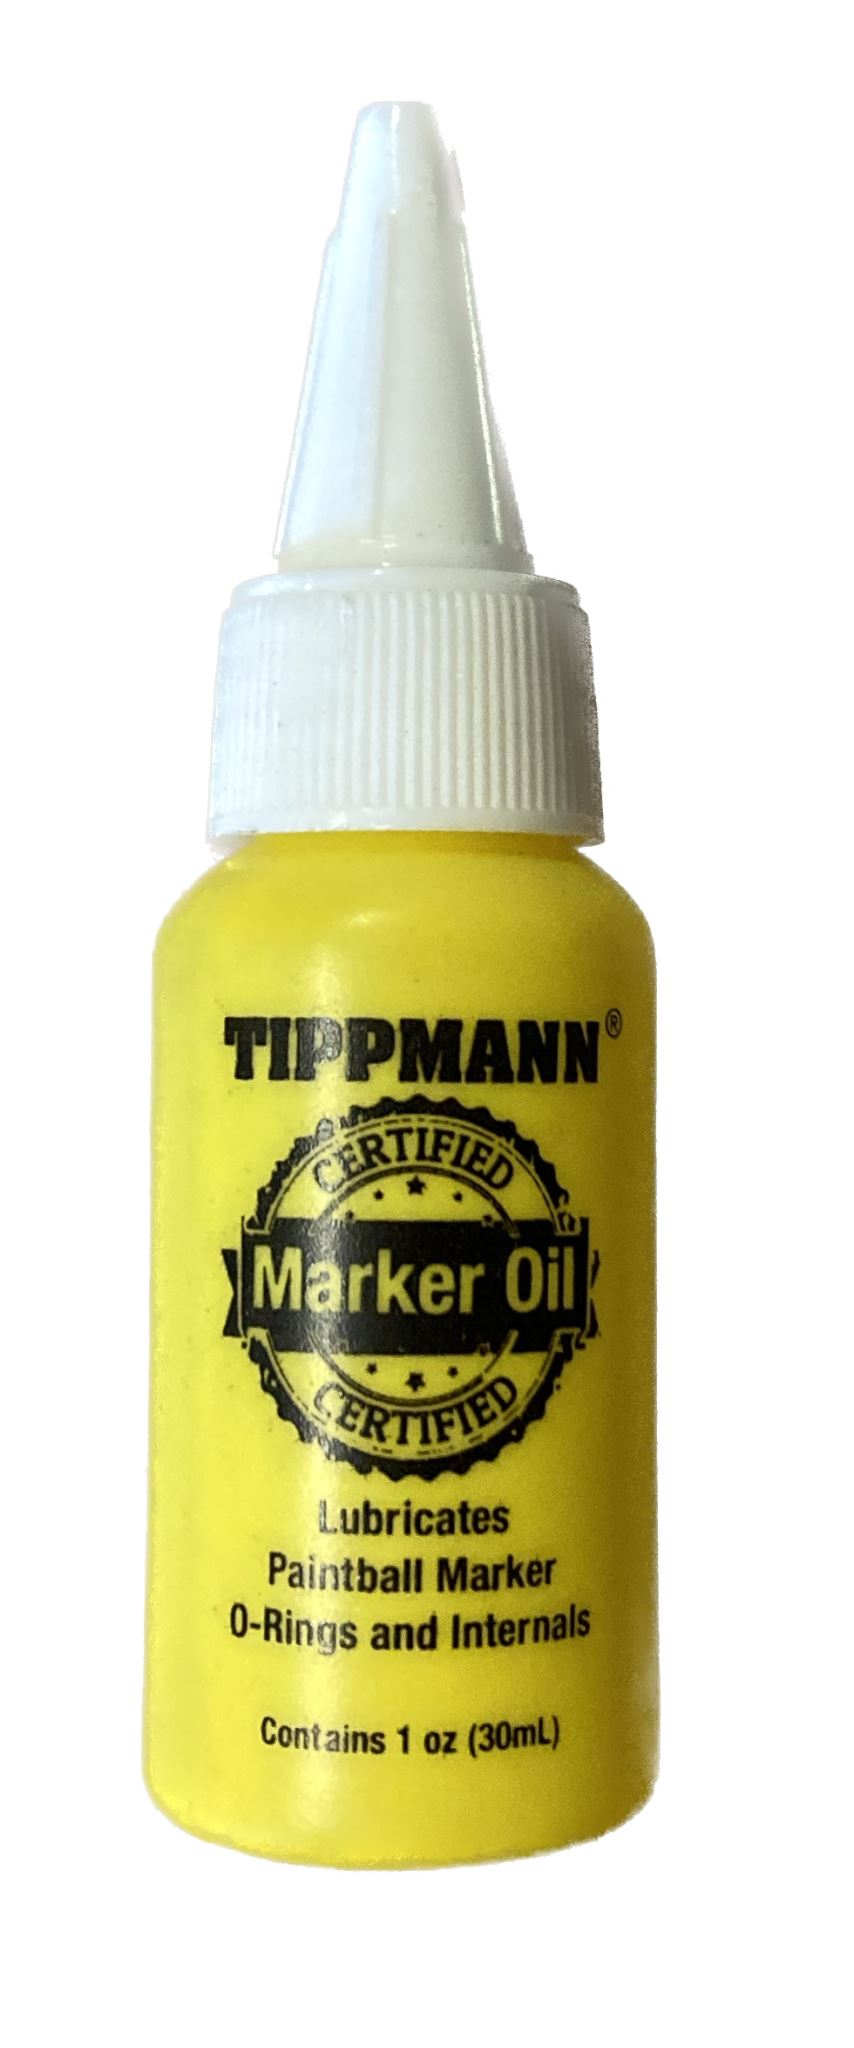 Tippmann Paintball Marker Oil 1oz (30ml)